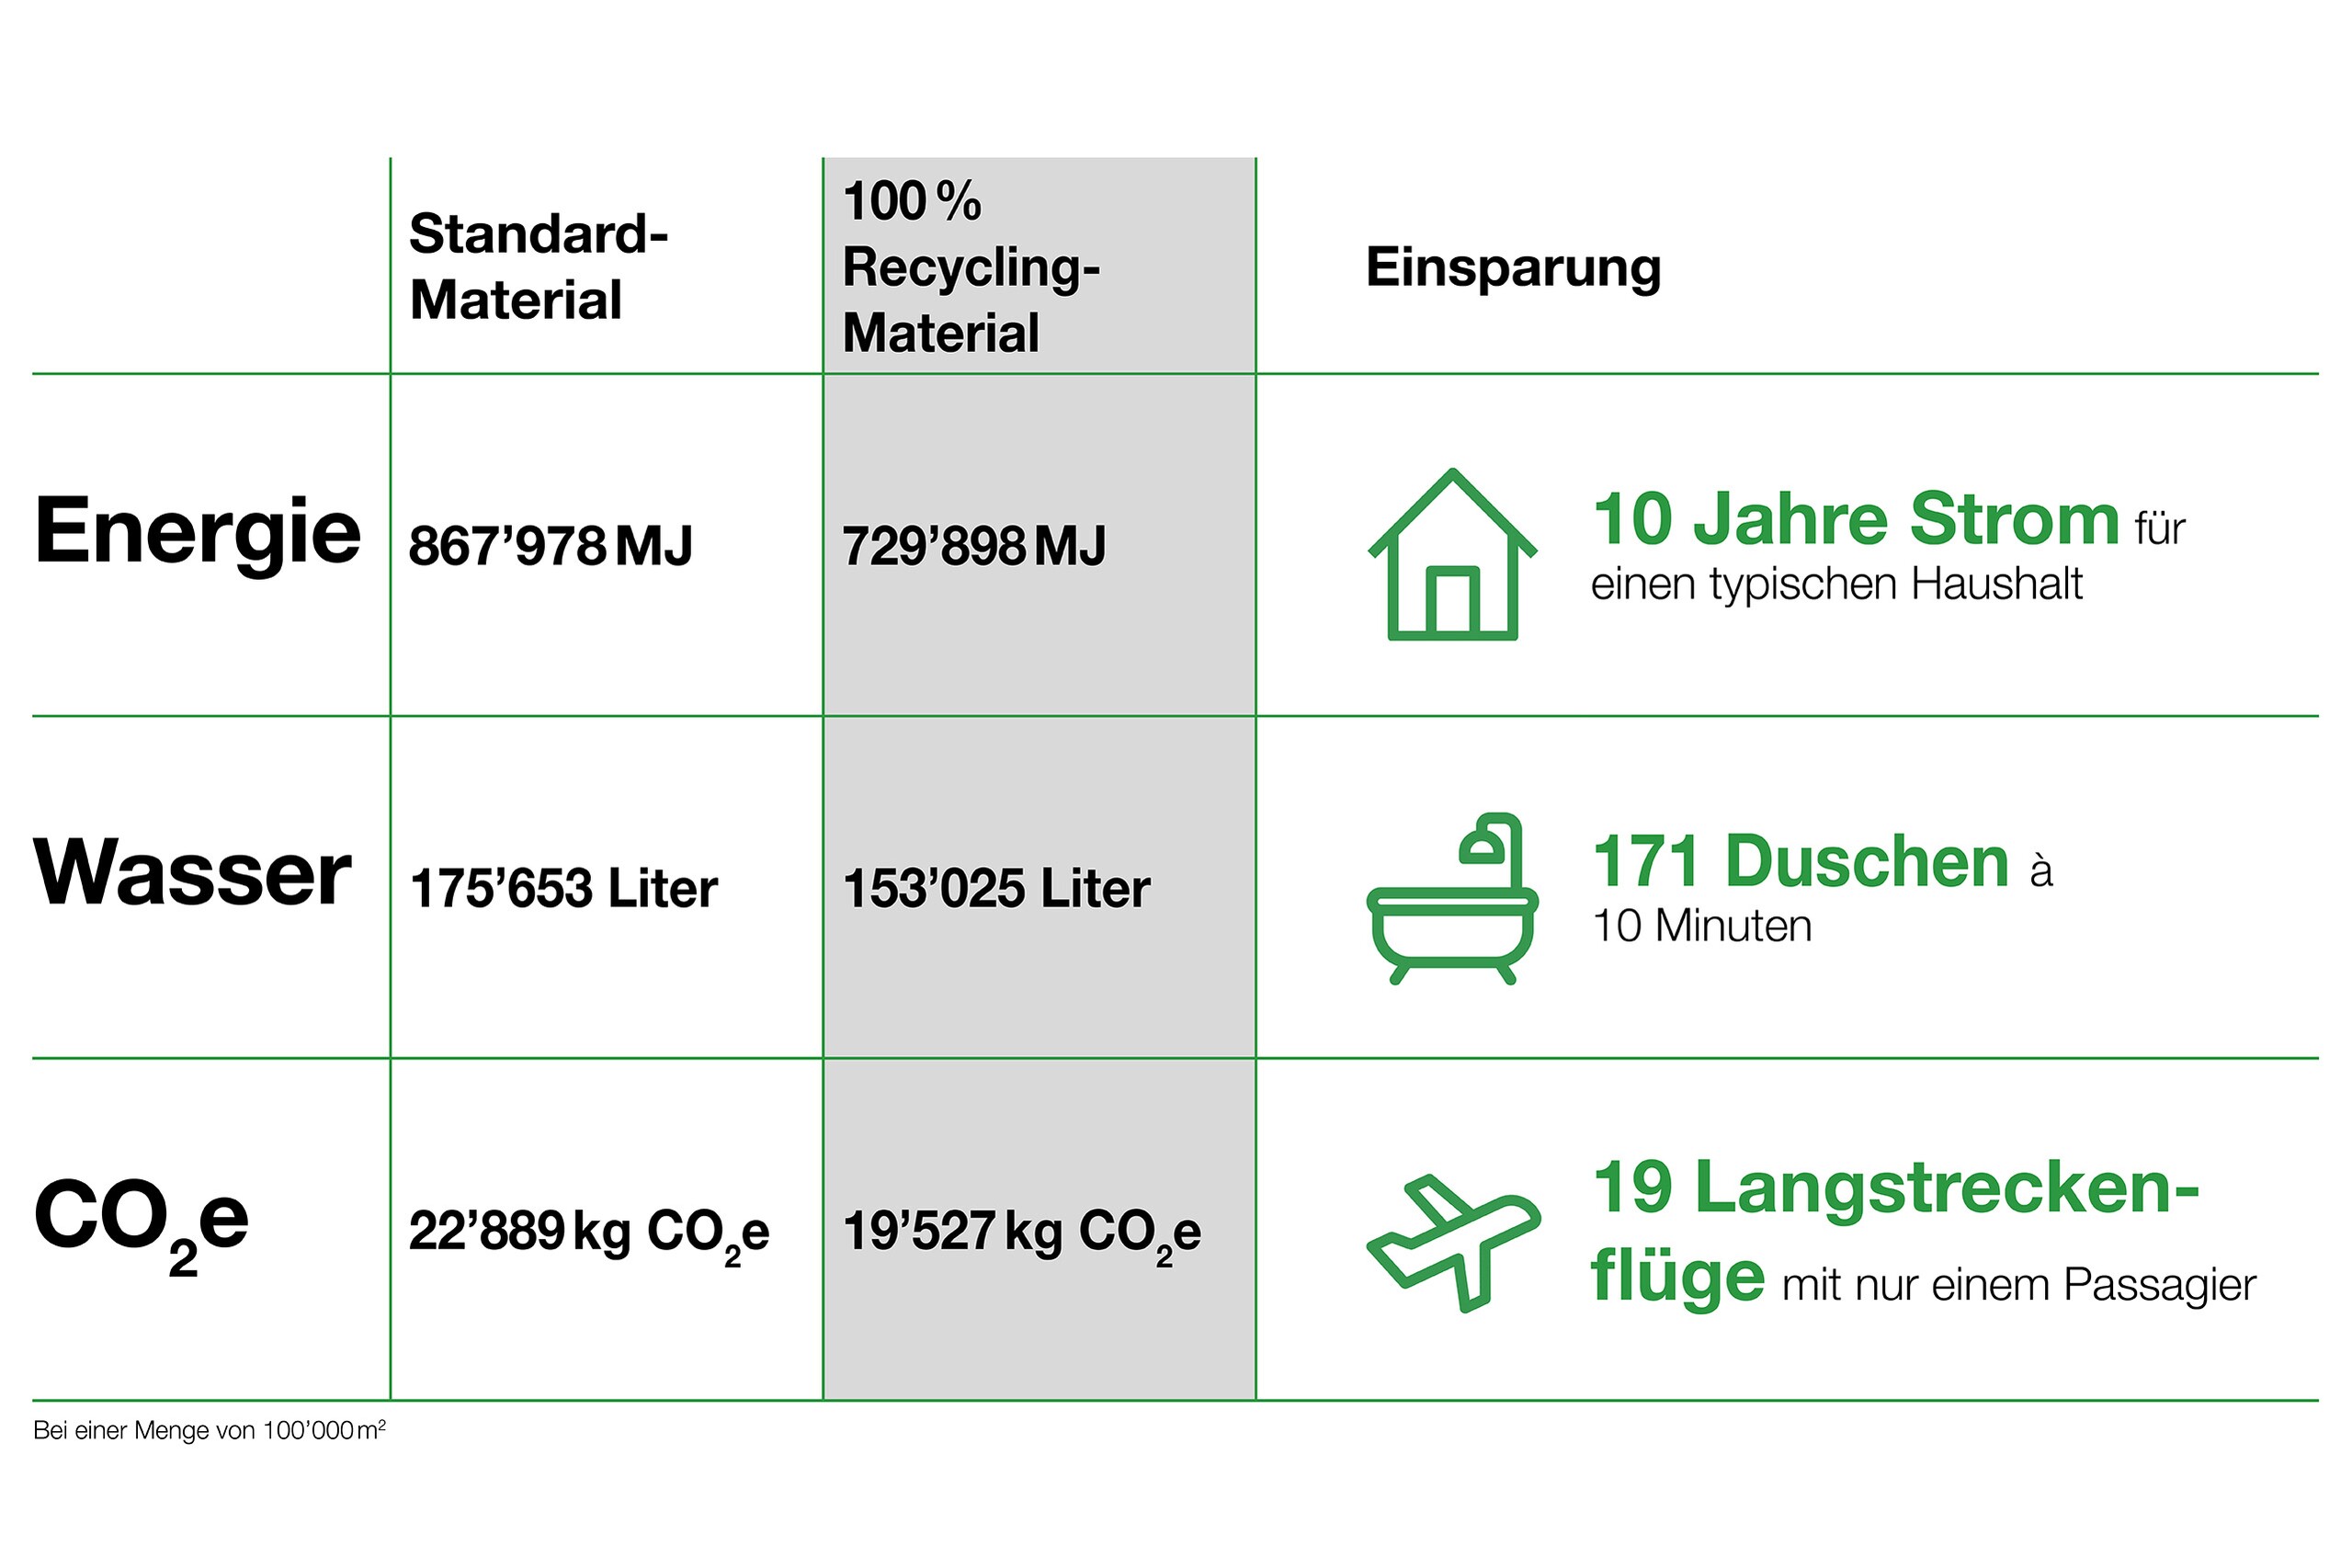 Tabelle zeigt Energie-Vergleich von Energie, Wasser und CO2e von Recycling-Etiketten auf.